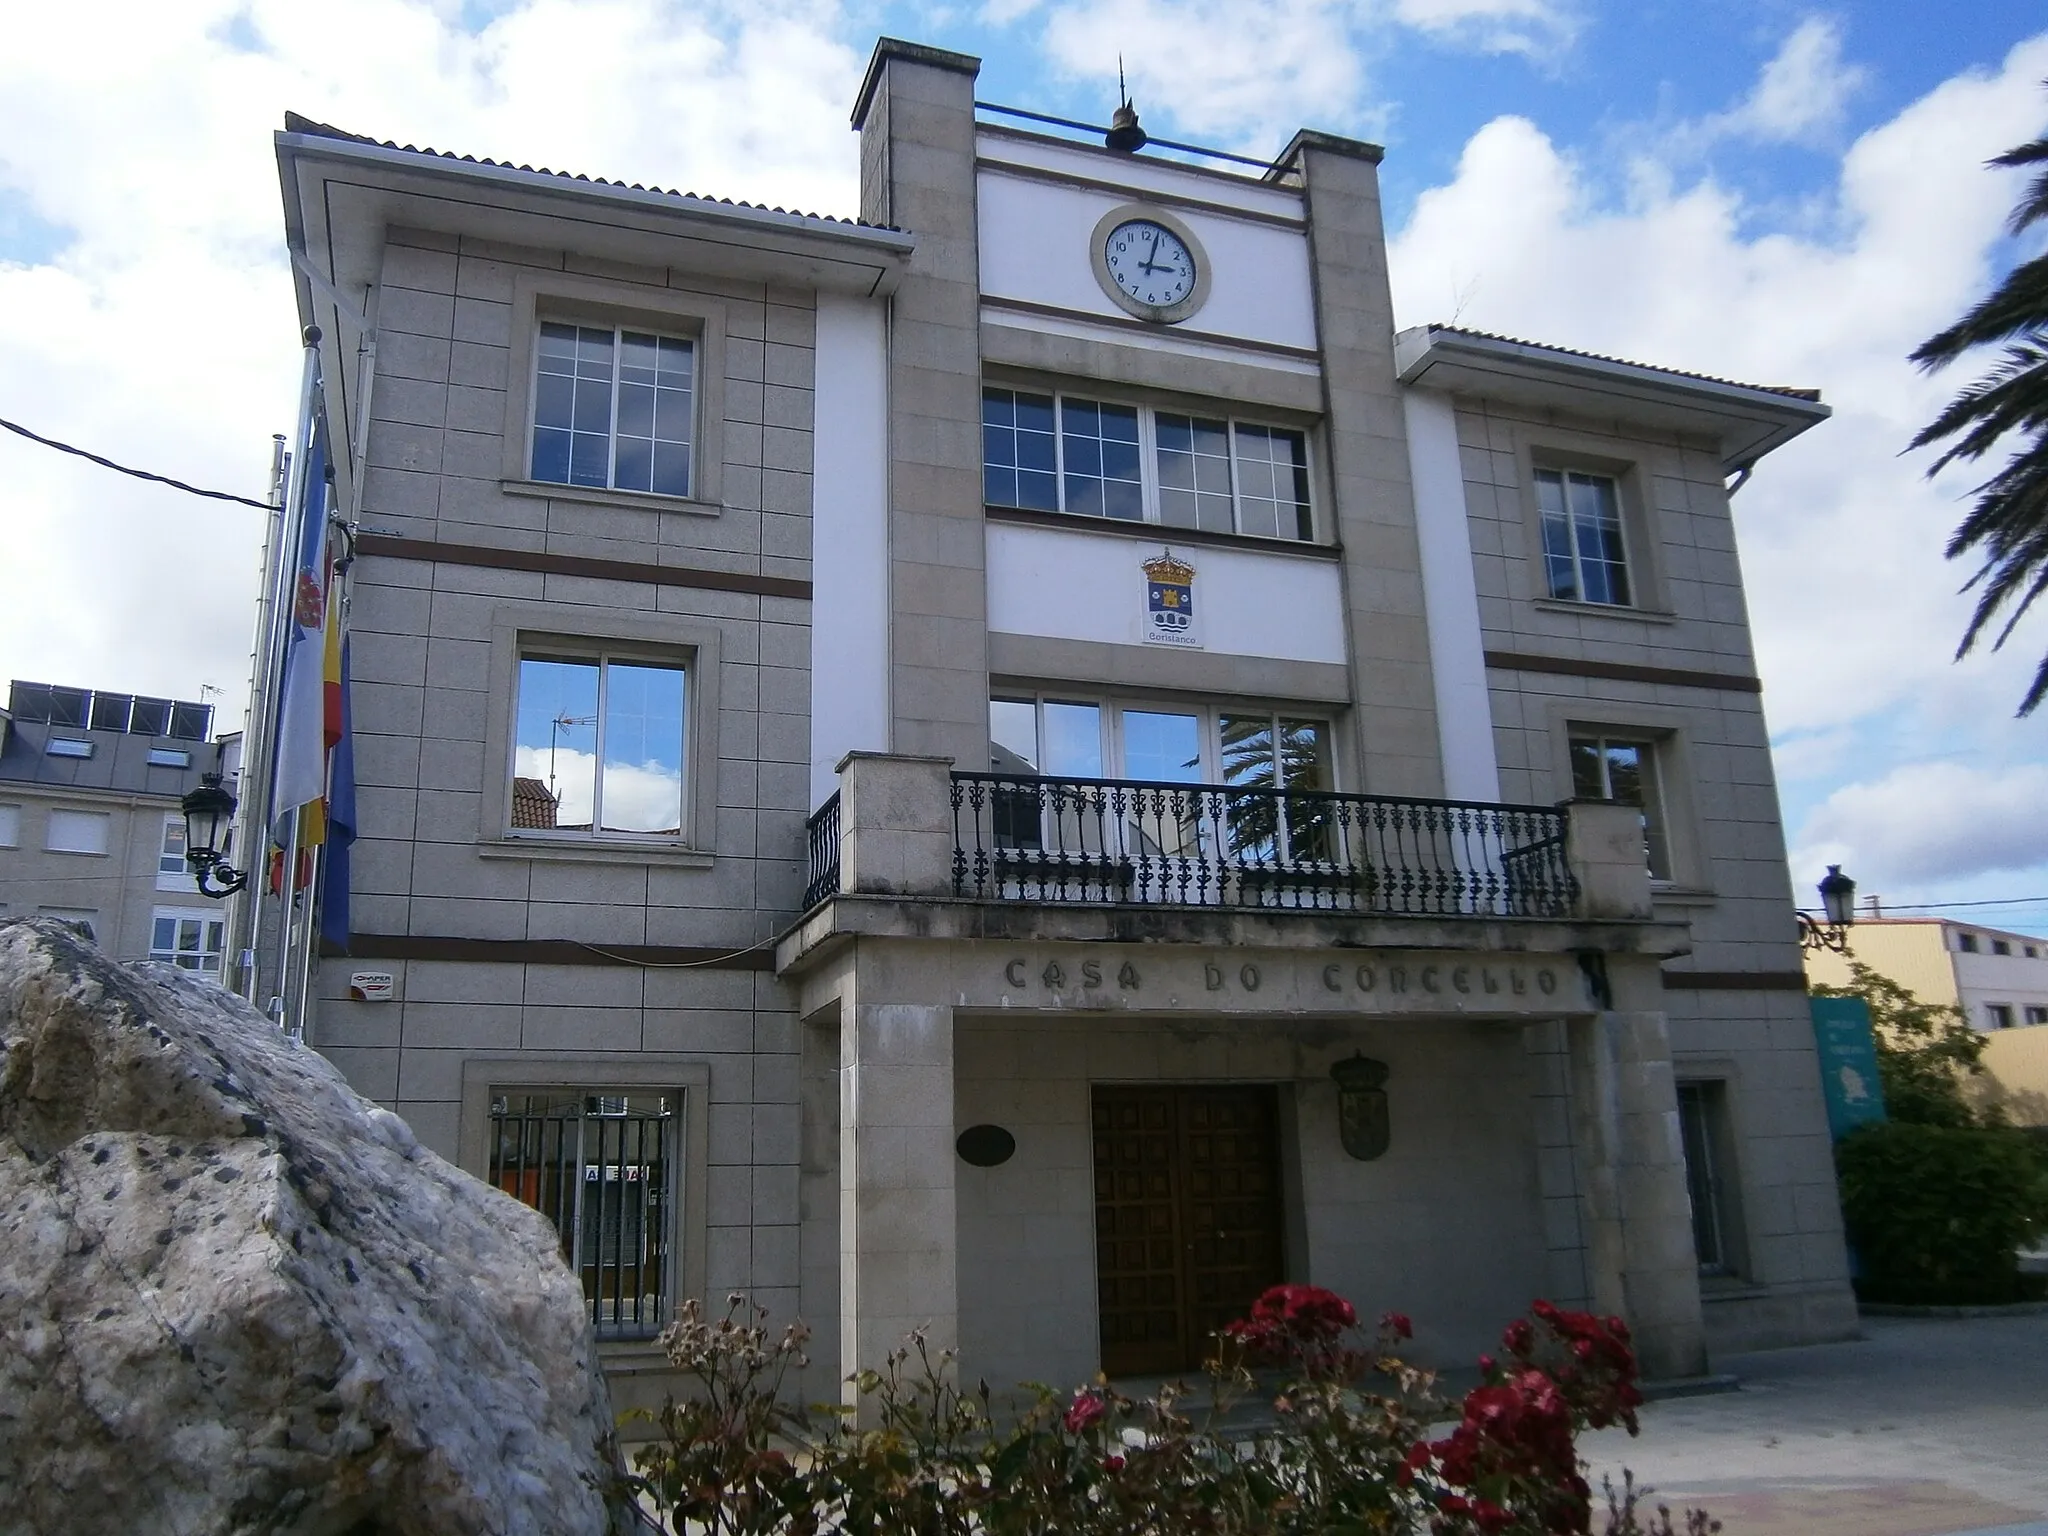 Photo showing: Casa do concello de Coristanco